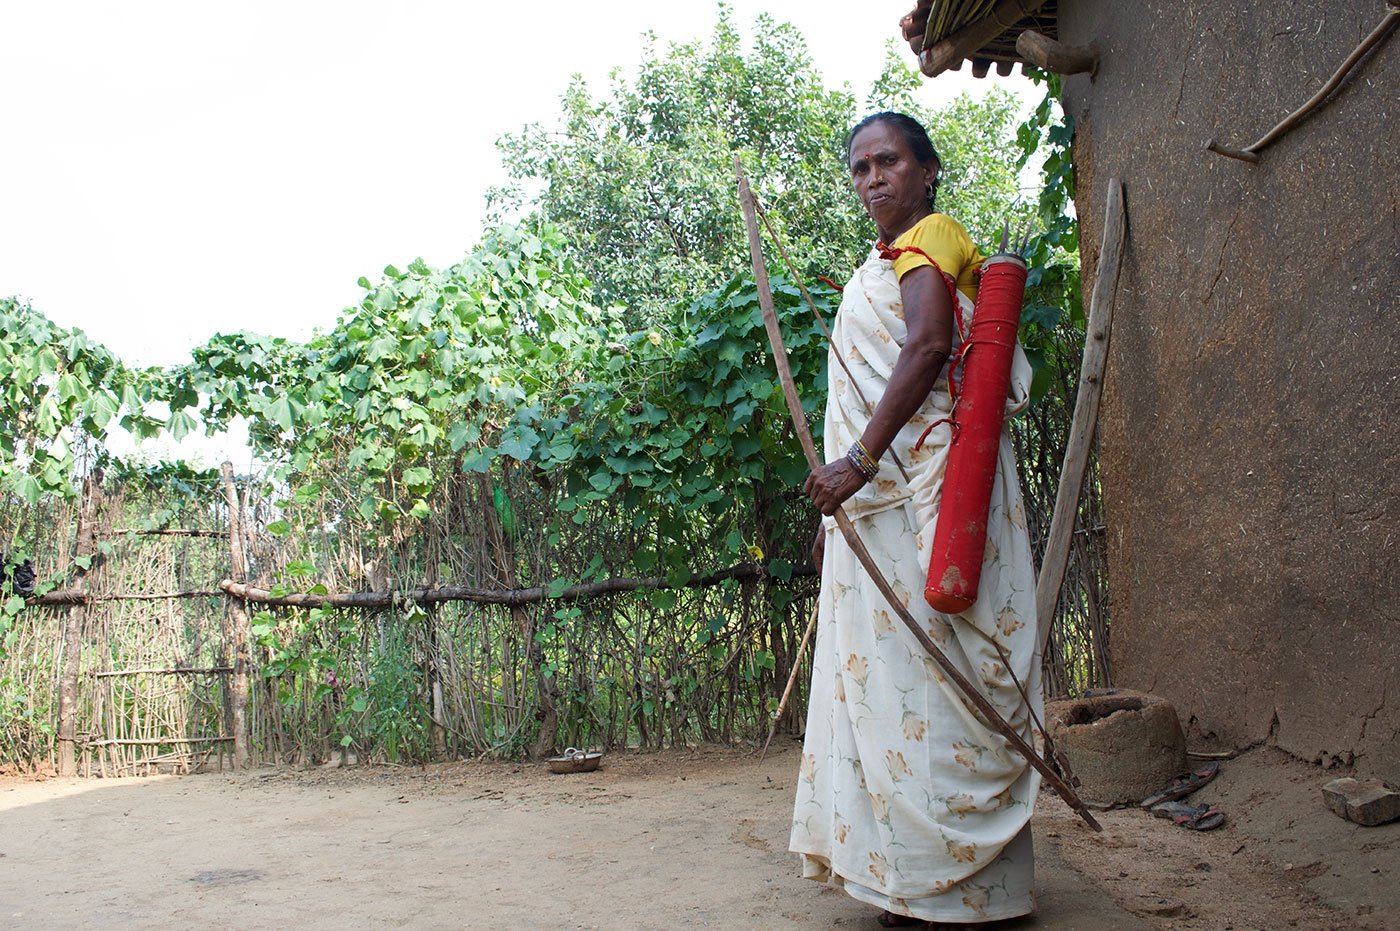 Rajkumari with her bows and arrow